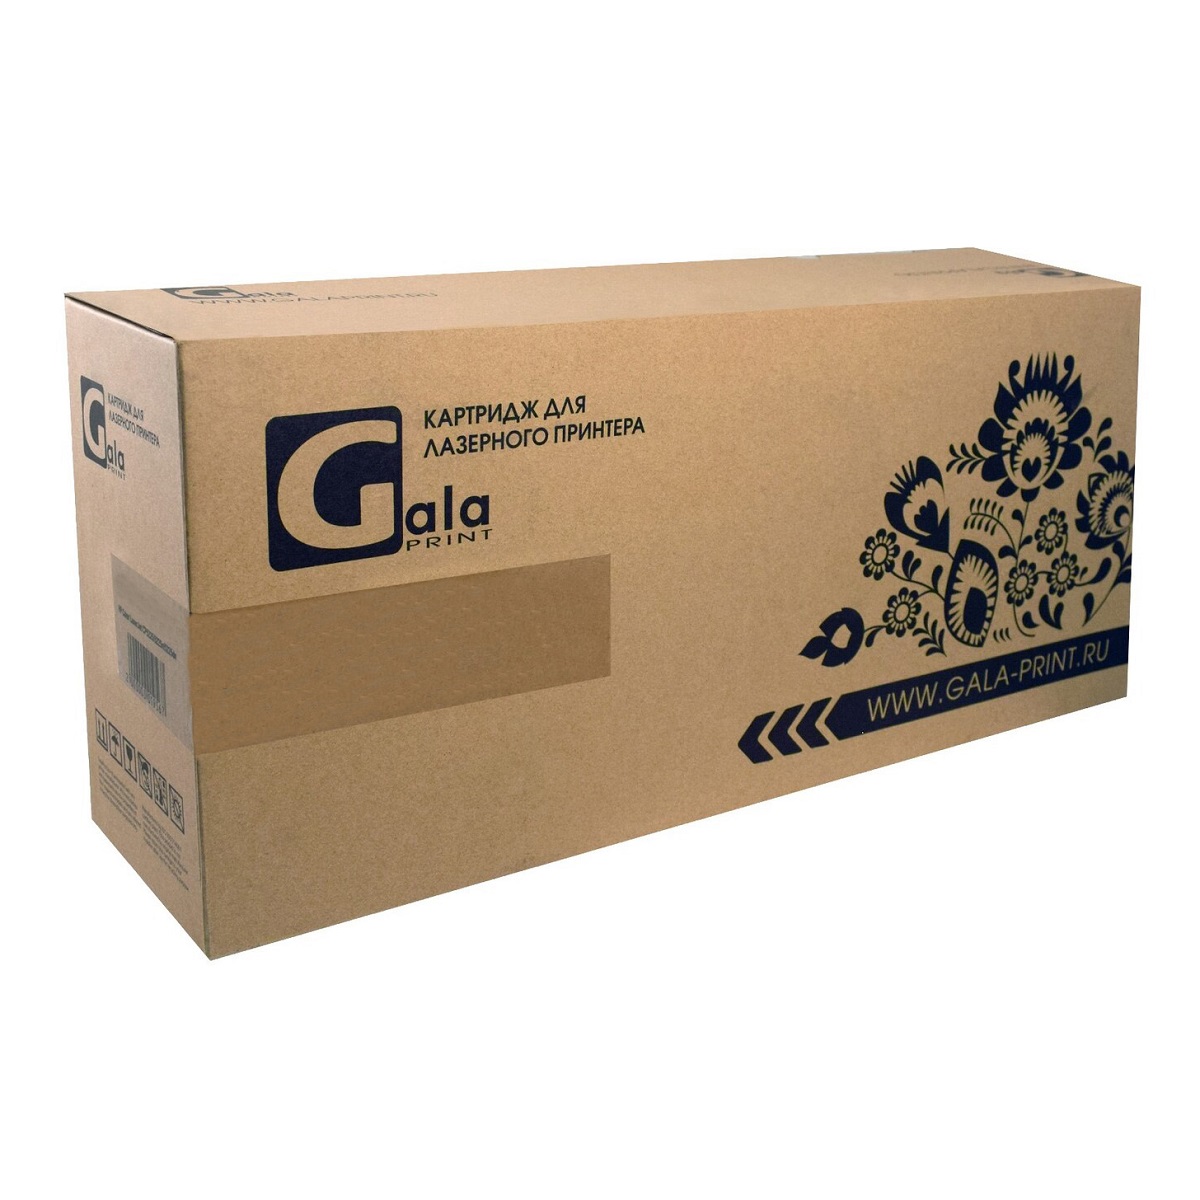 Картридж лазерный GalaPrint GP-034 (034/9452B001), пурпурный 7300 страниц, совместимый, для Canon ImageRunner C1225